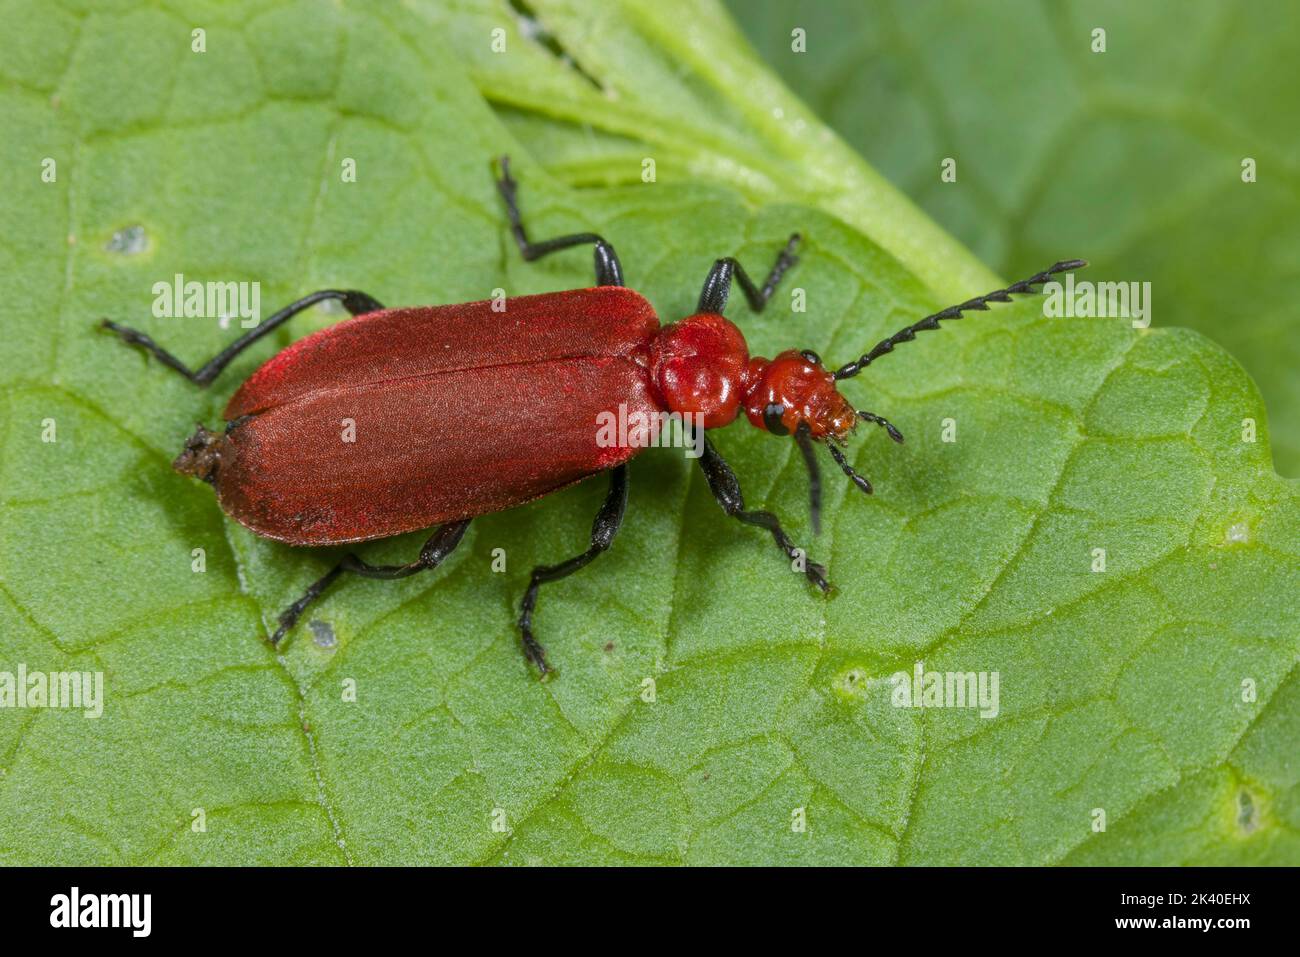 El Cardenal Beetle, Cardinal Beetles, Escarabajo Cardinal de cabeza roja (Pyrochroa serraticornis), se sienta sobre una hoja, Alemania Foto de stock